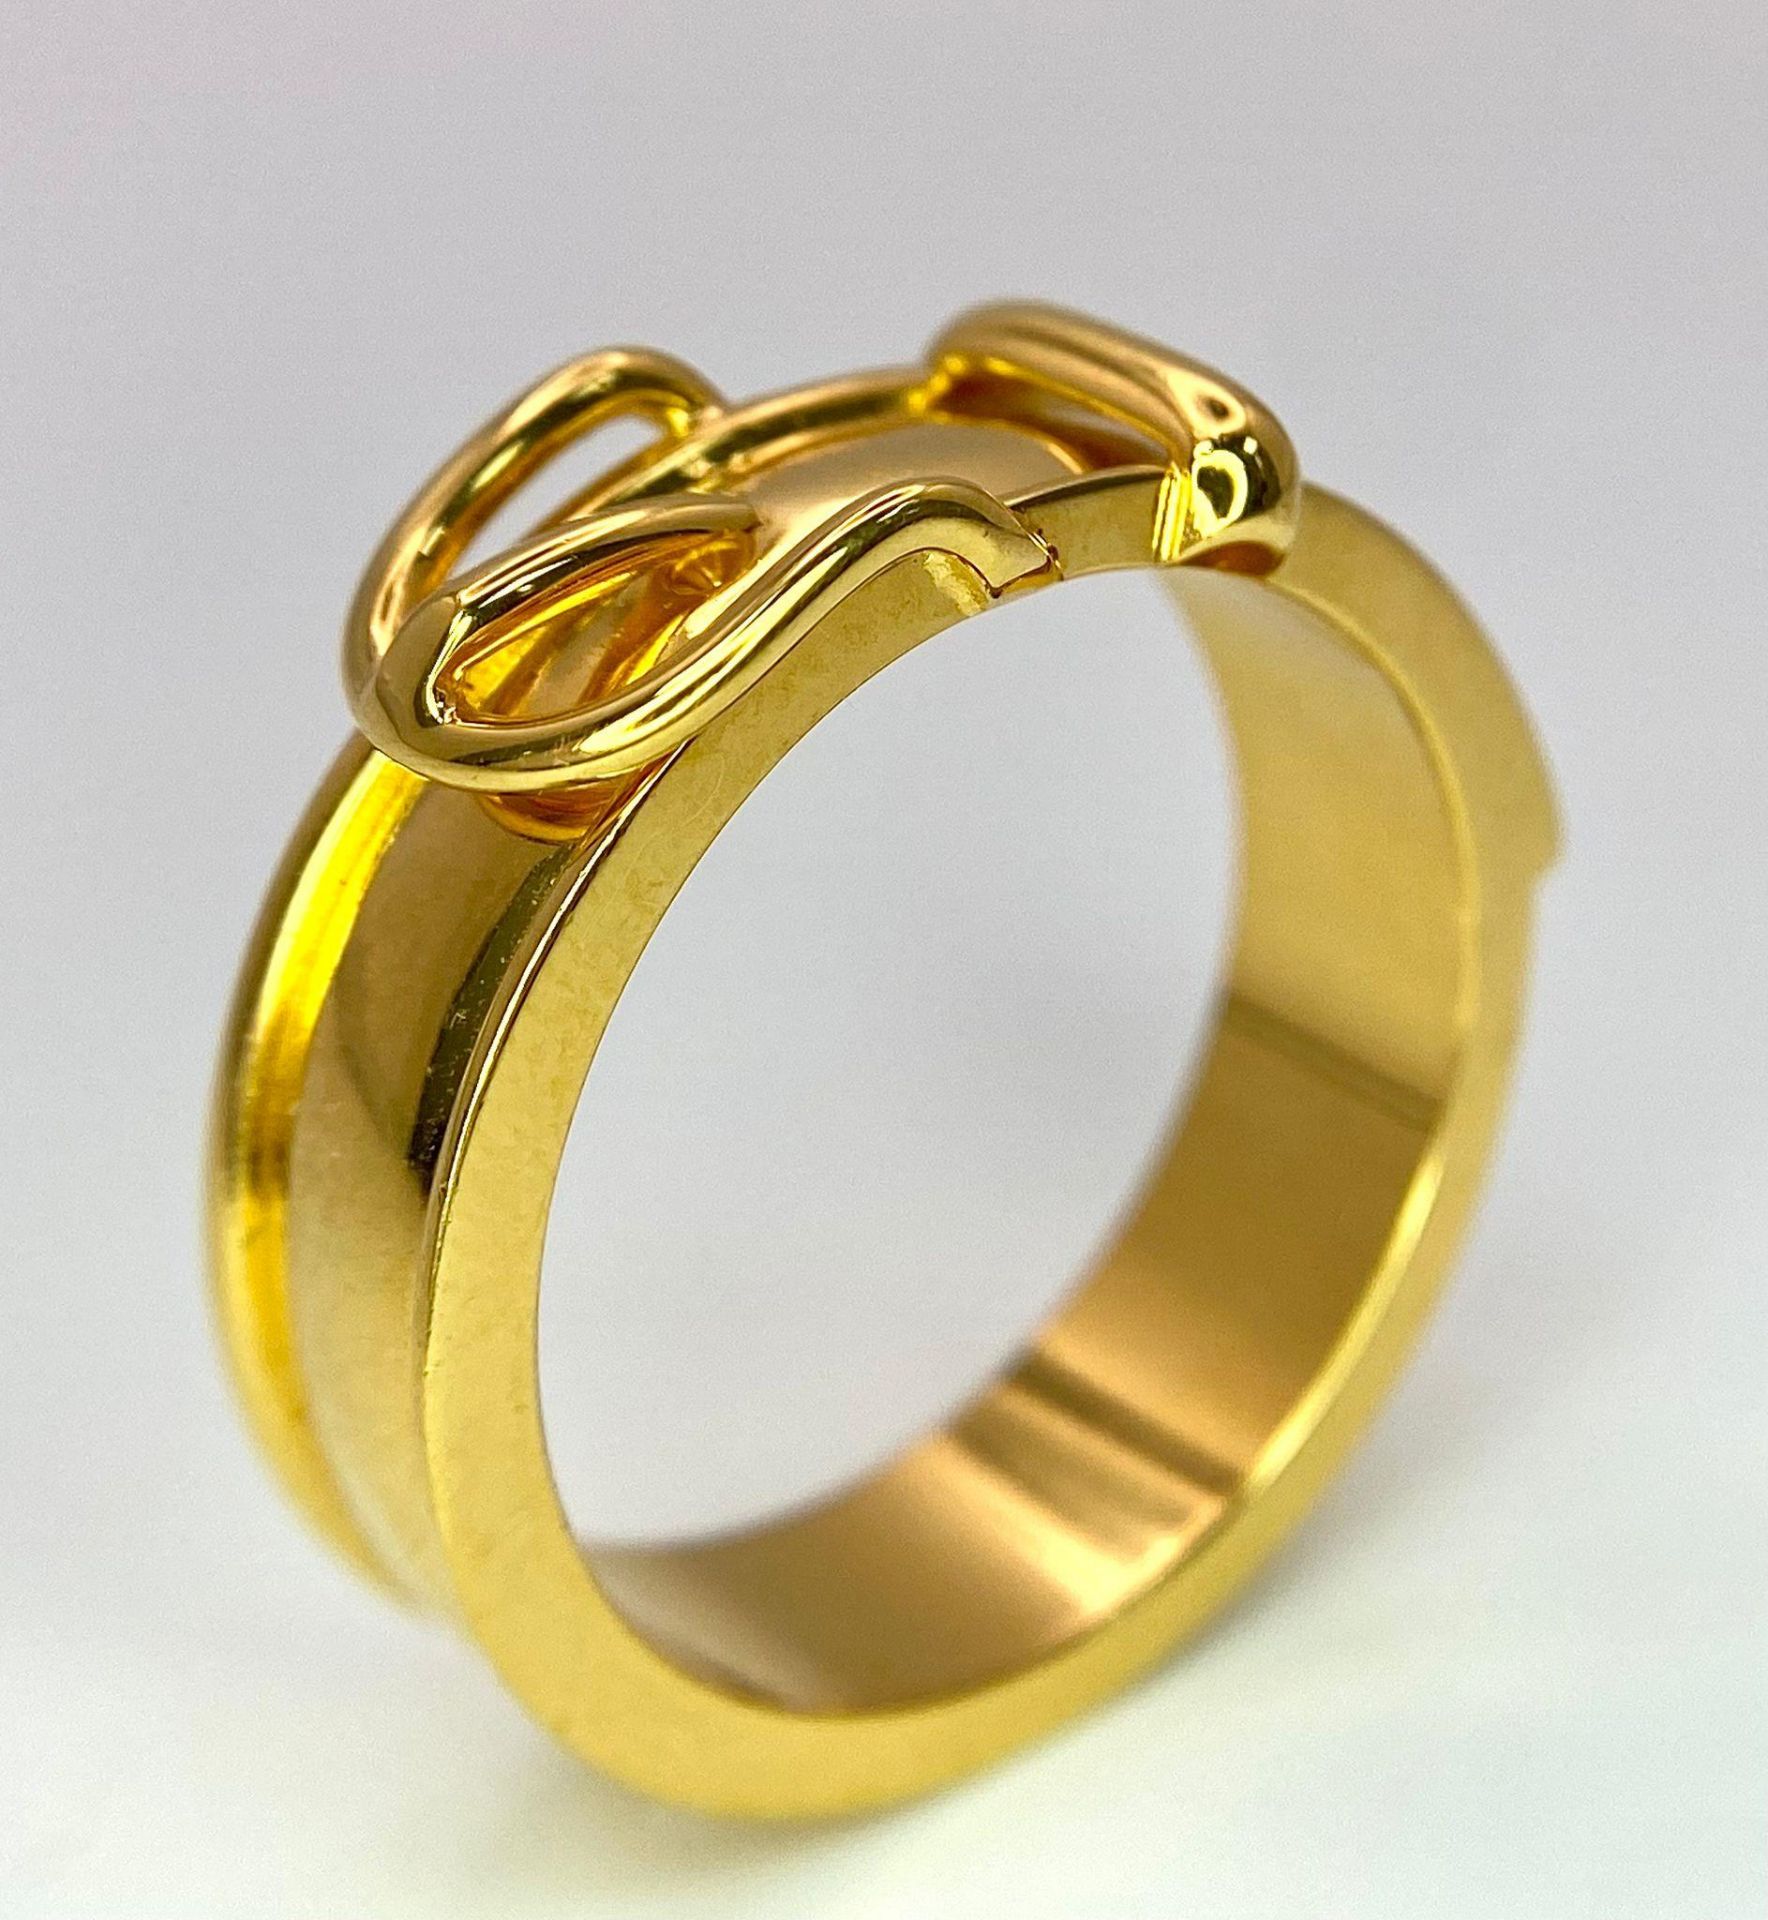 A Gold Plated Hermes Designer Belt Buckle Ring. Size S. - Image 5 of 8